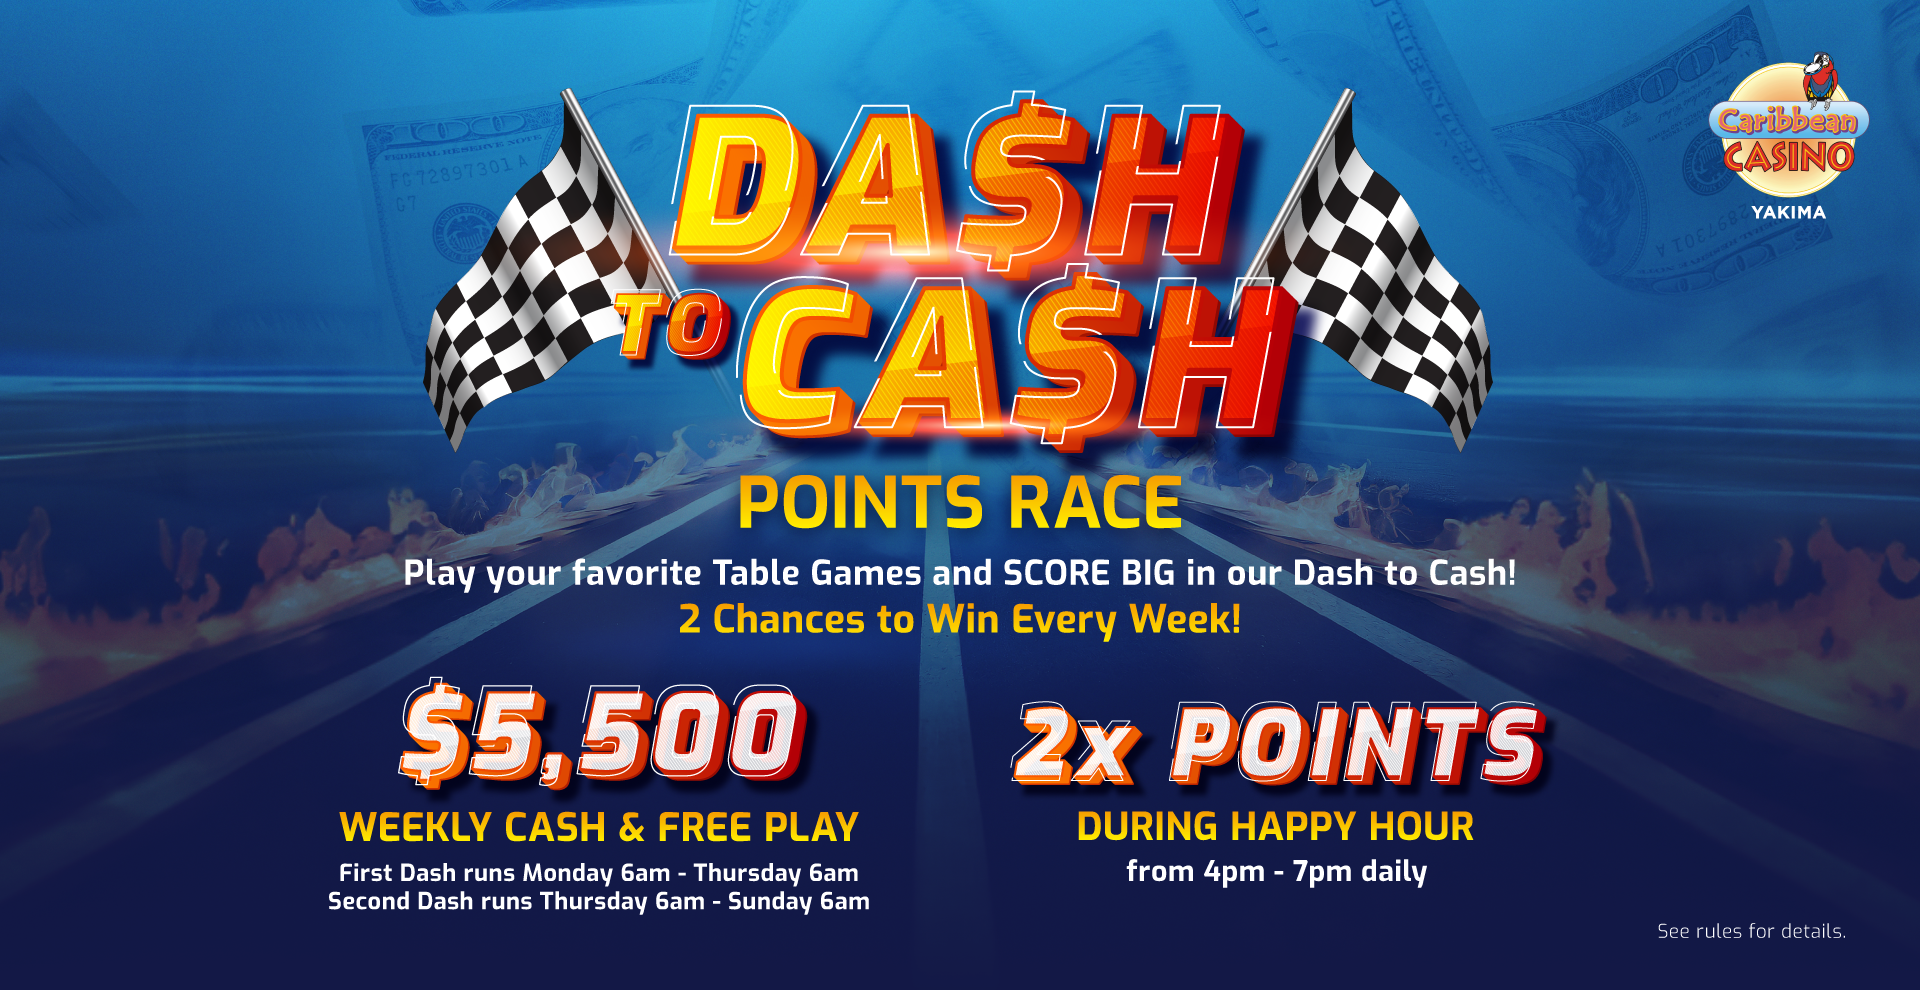 Caribbean Casino Yakima | Dash to Cash Points Race